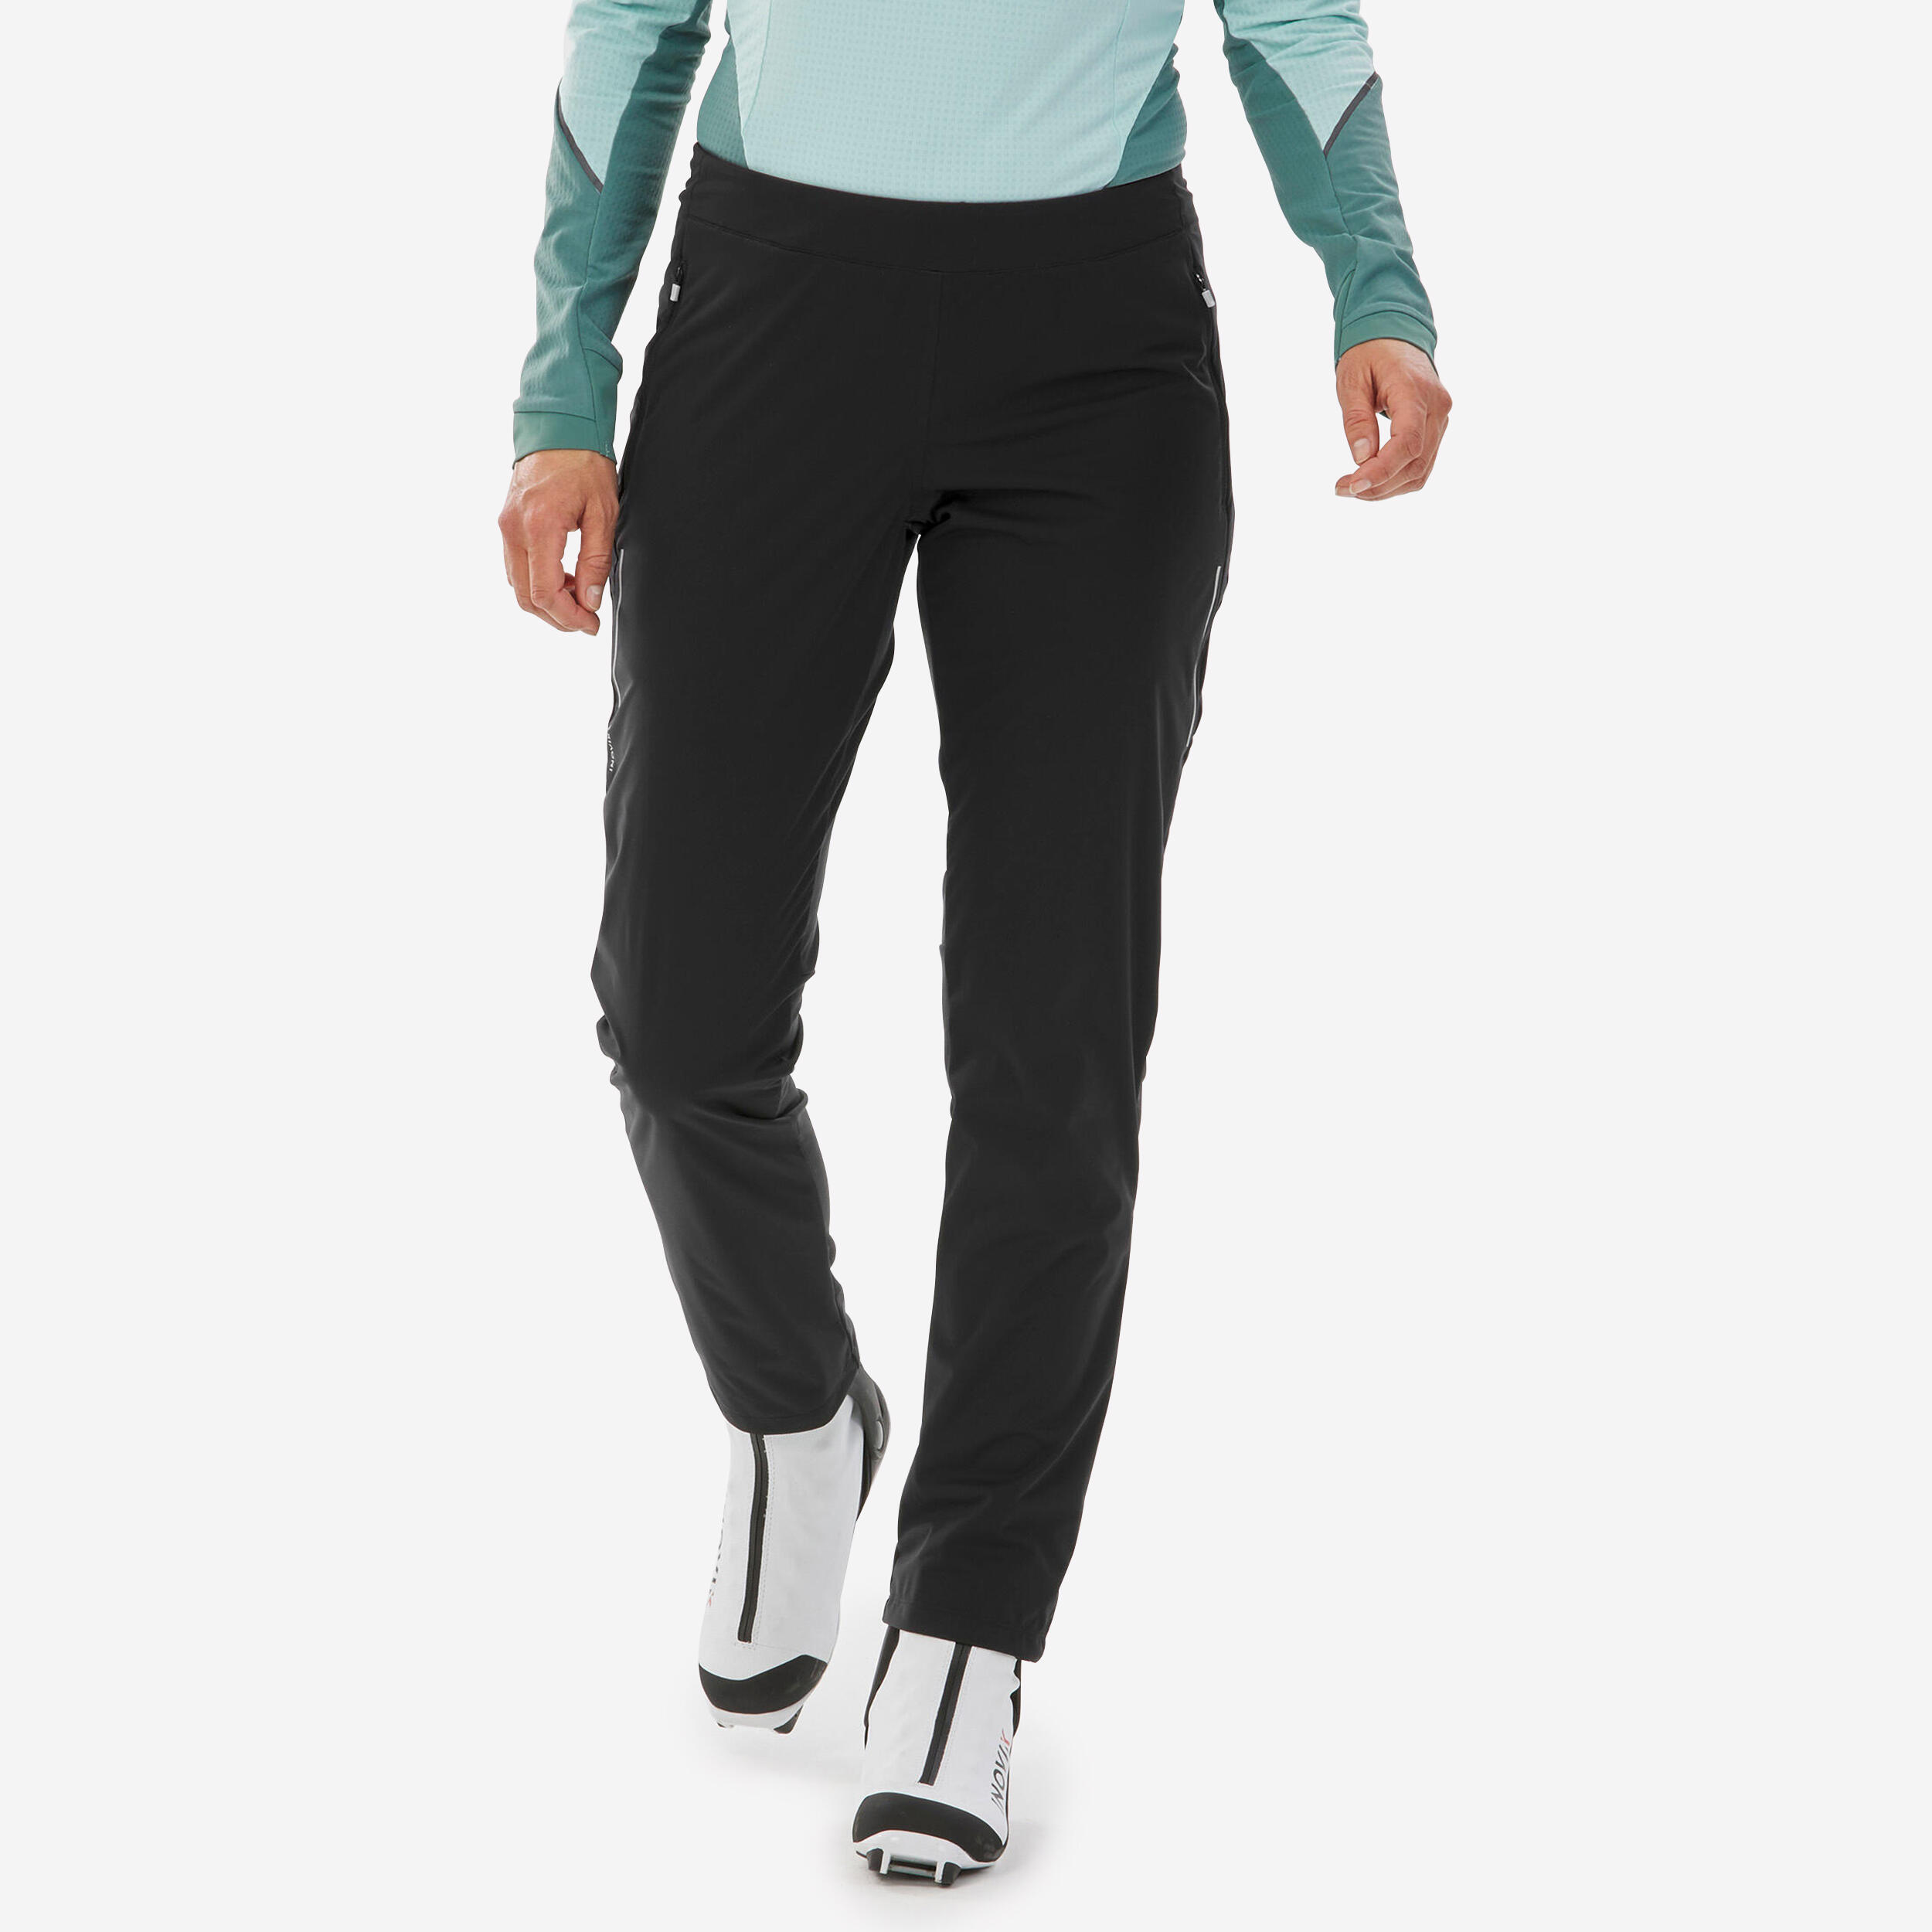 INOVIK Women's Cross-country Skiing Trousers XC S Pant 500